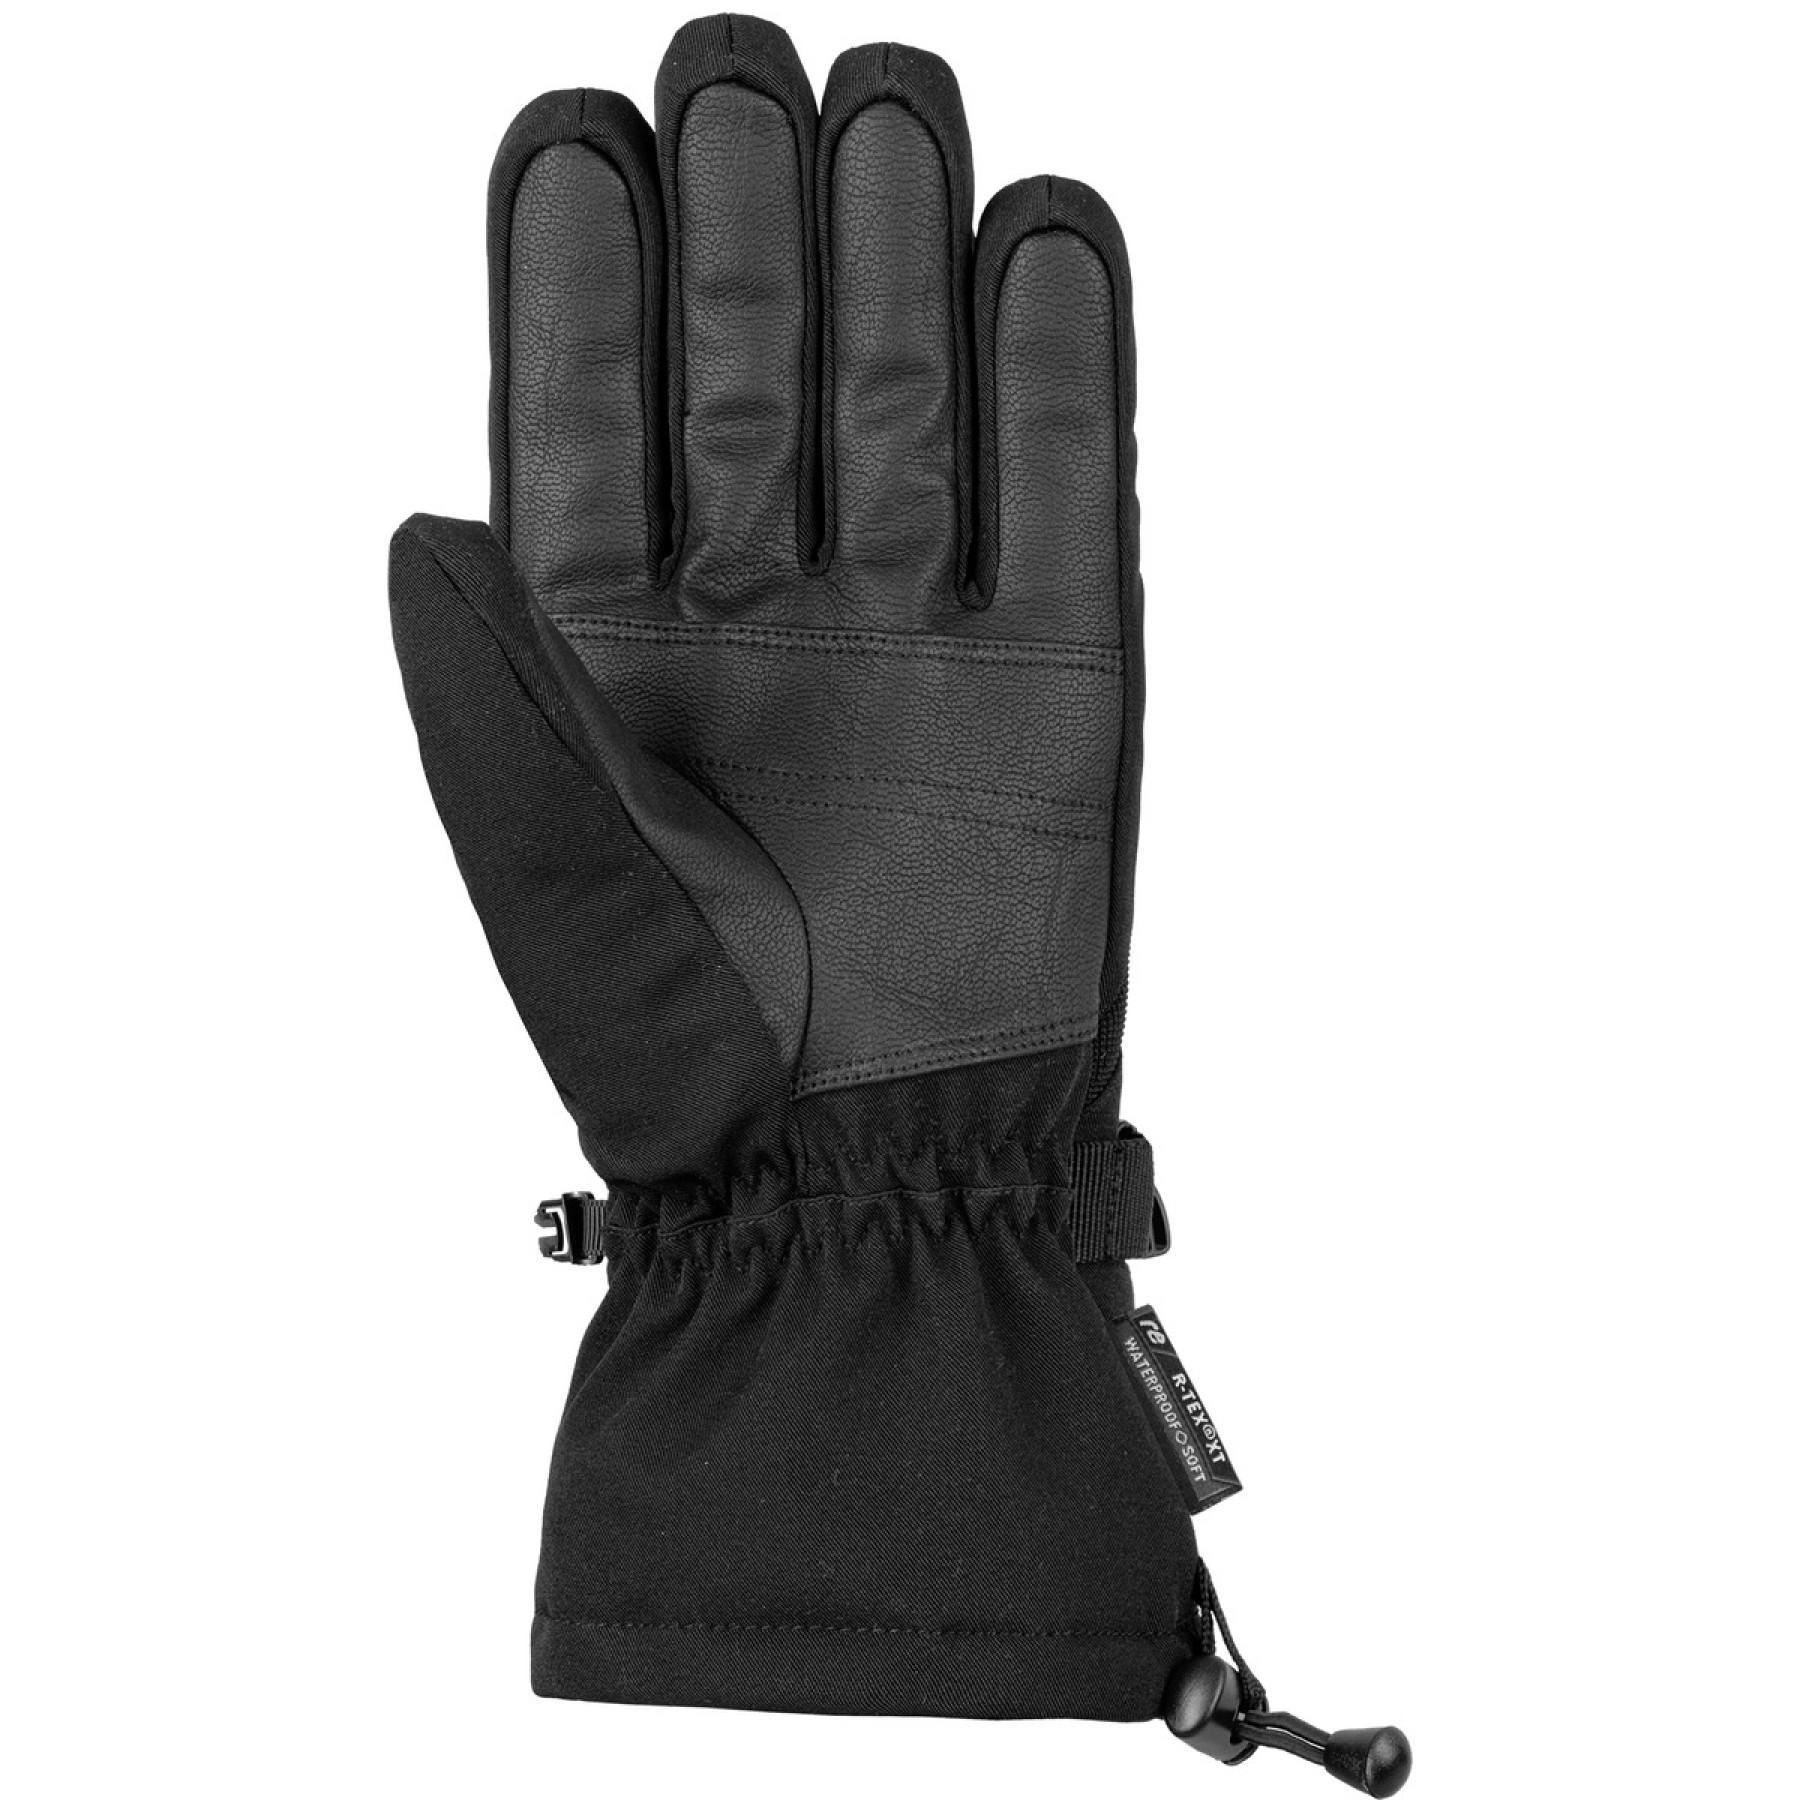 Gloves Reusch Outset R-tex® Xt